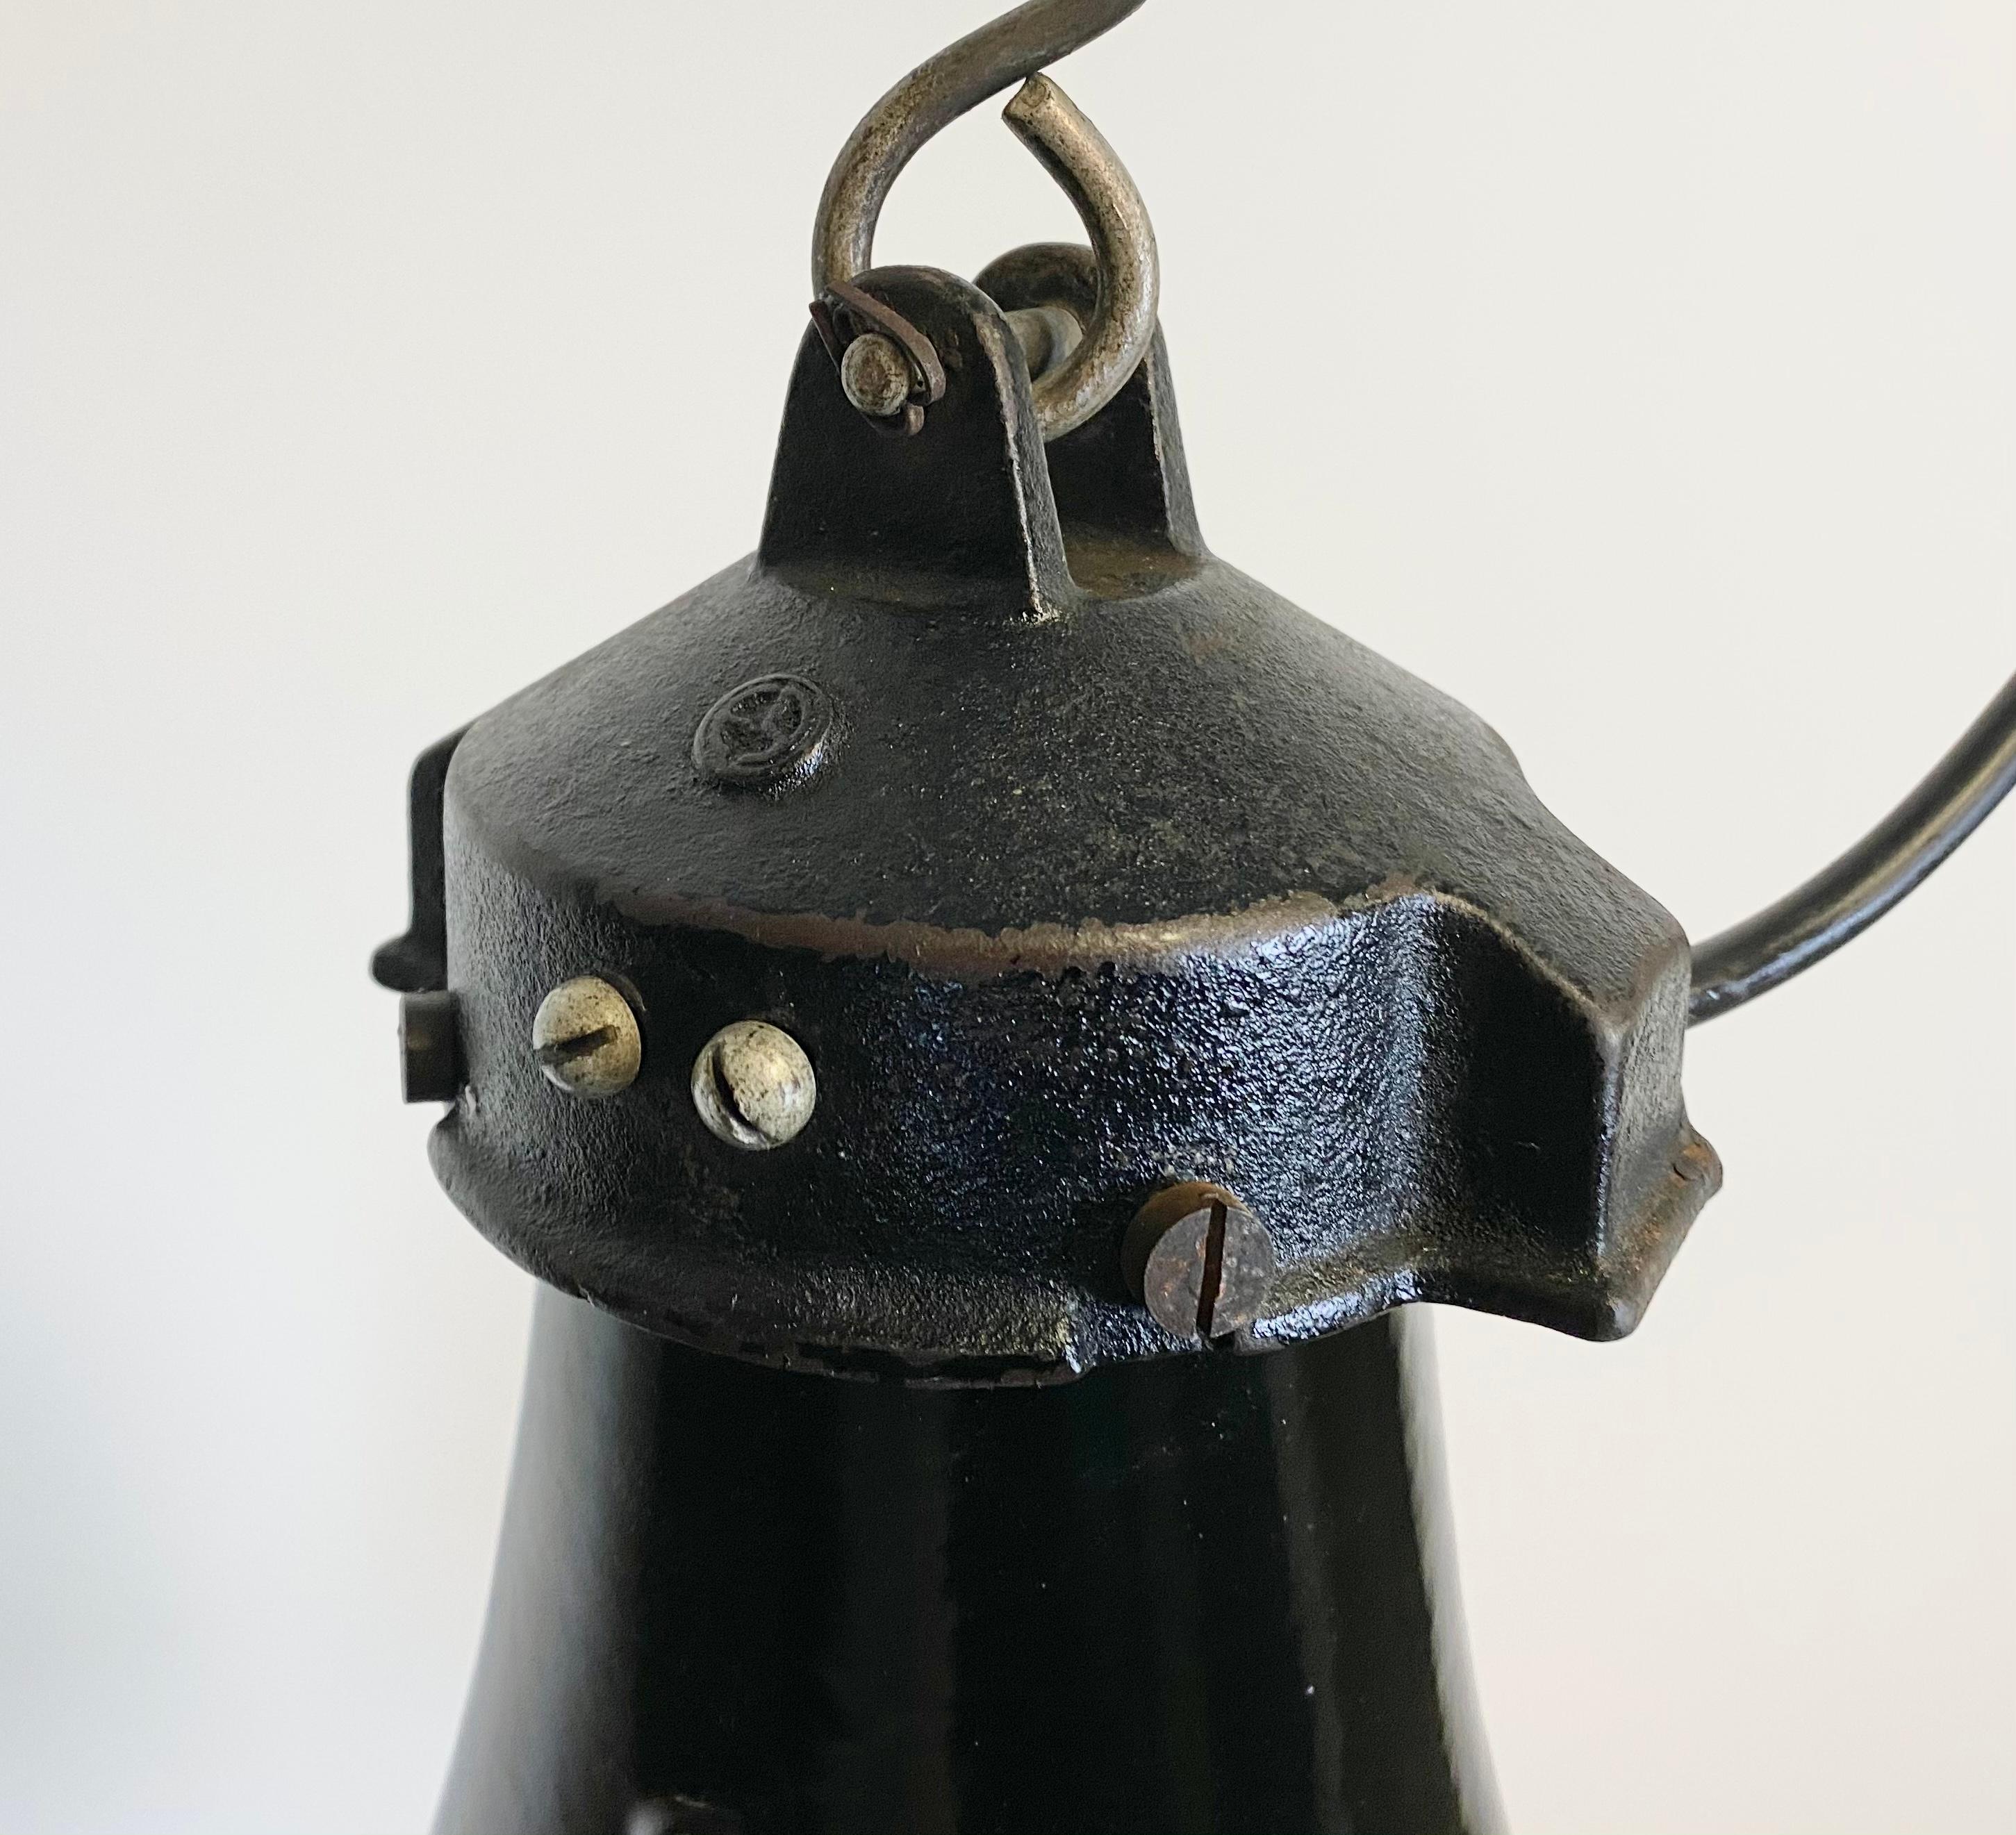 Lampe suspendue vintage industrielle en émail noir dans le style Bauhaus. Utilisé dans les usines de l'ancienne Tchécoslovaquie dans les années 1930. Intérieur en émail blanc. Dessus en fonte. Nouveau câblage et nouvelle douille en porcelaine pour